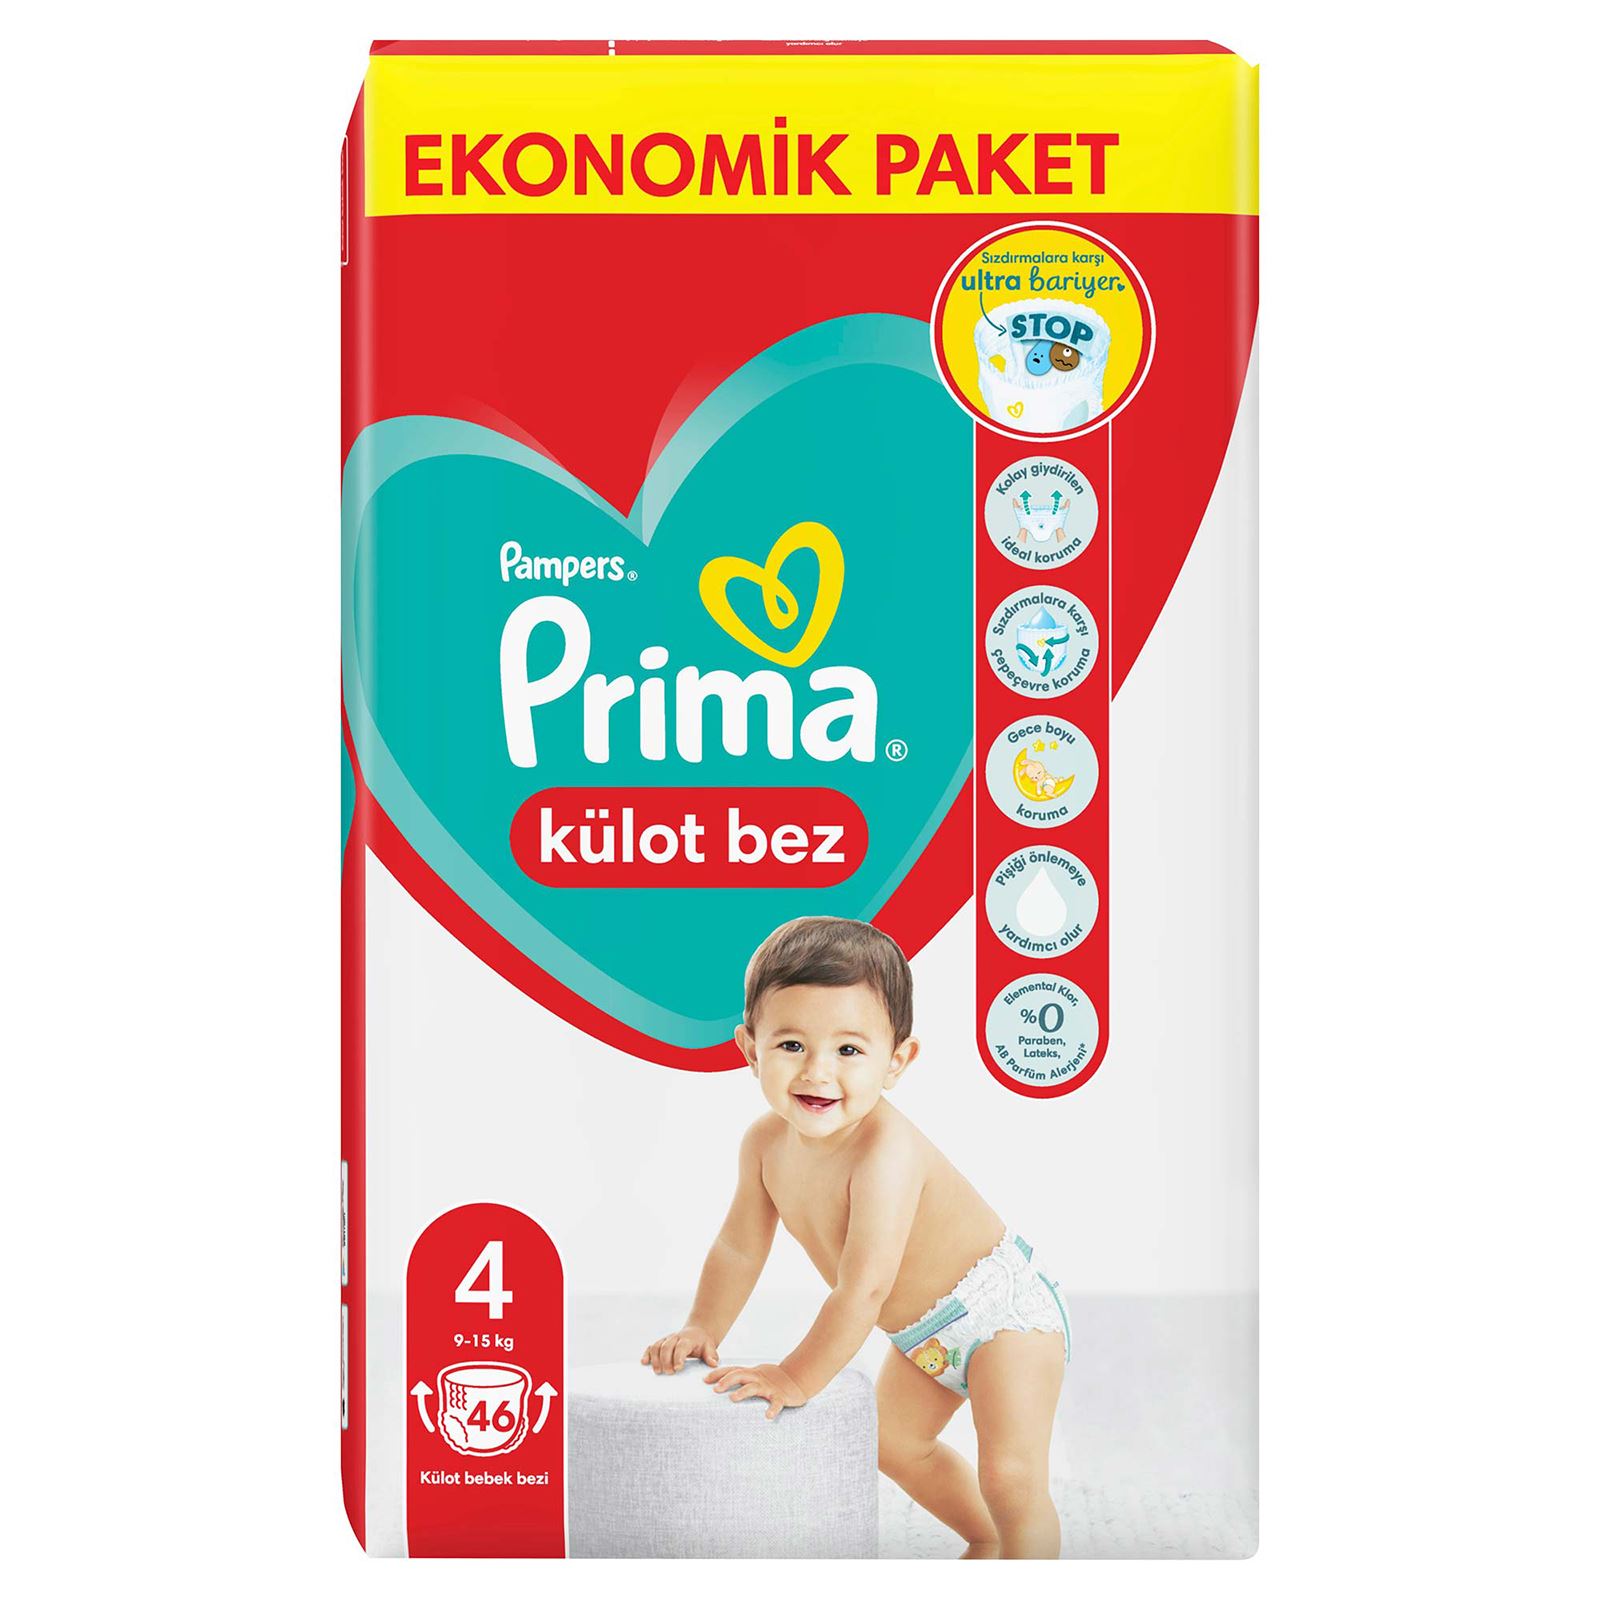 Prima Külot Bebek Bezi Ekonomik Paket 4 Beden Maxi 46 Adet